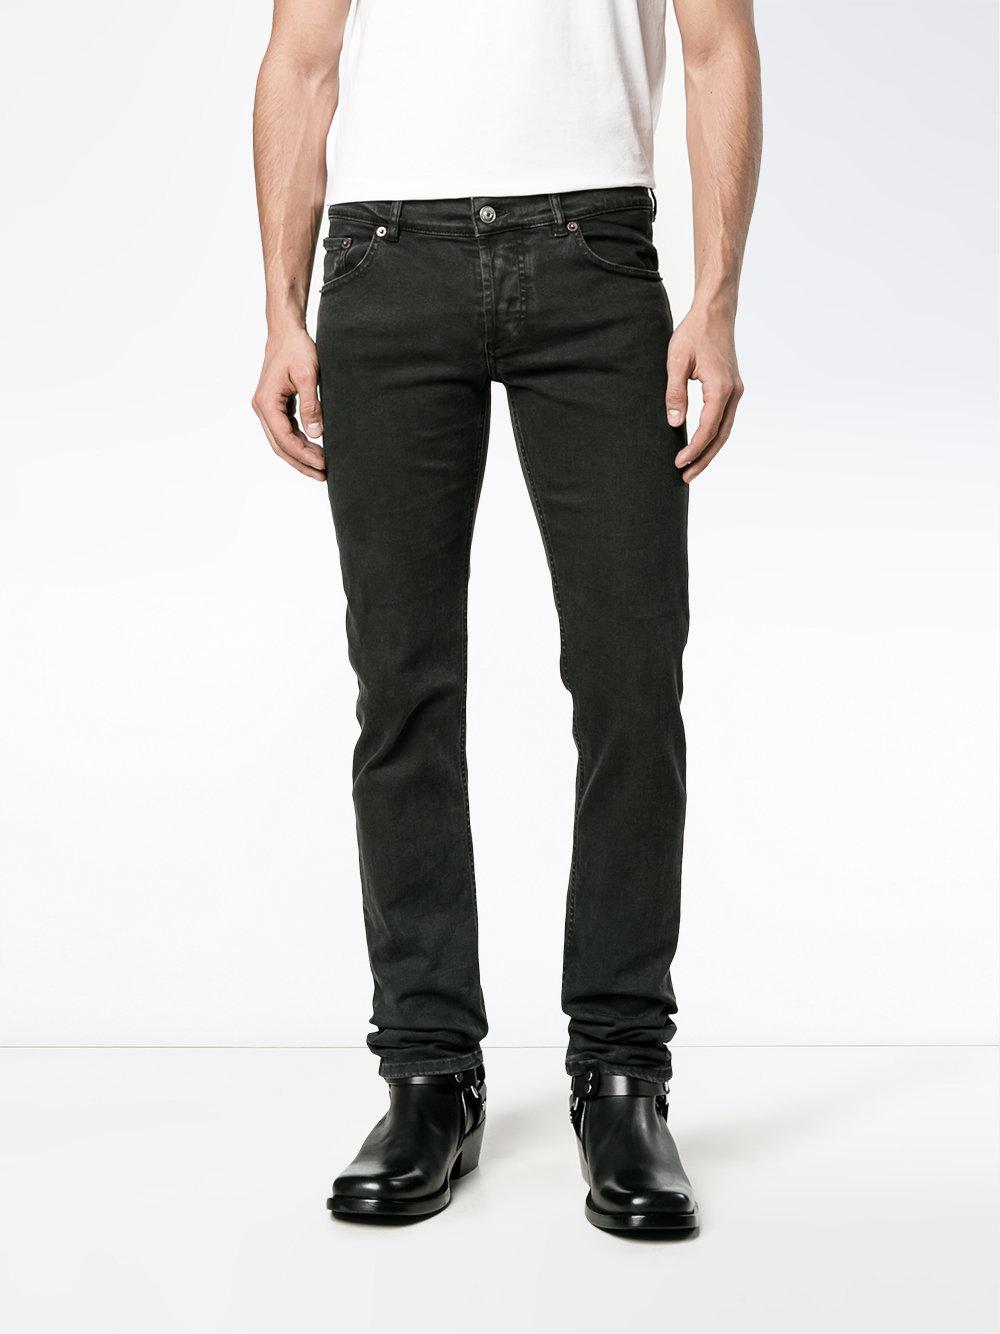 Balenciaga Denim Skinny Jeans in Black for Men - Lyst